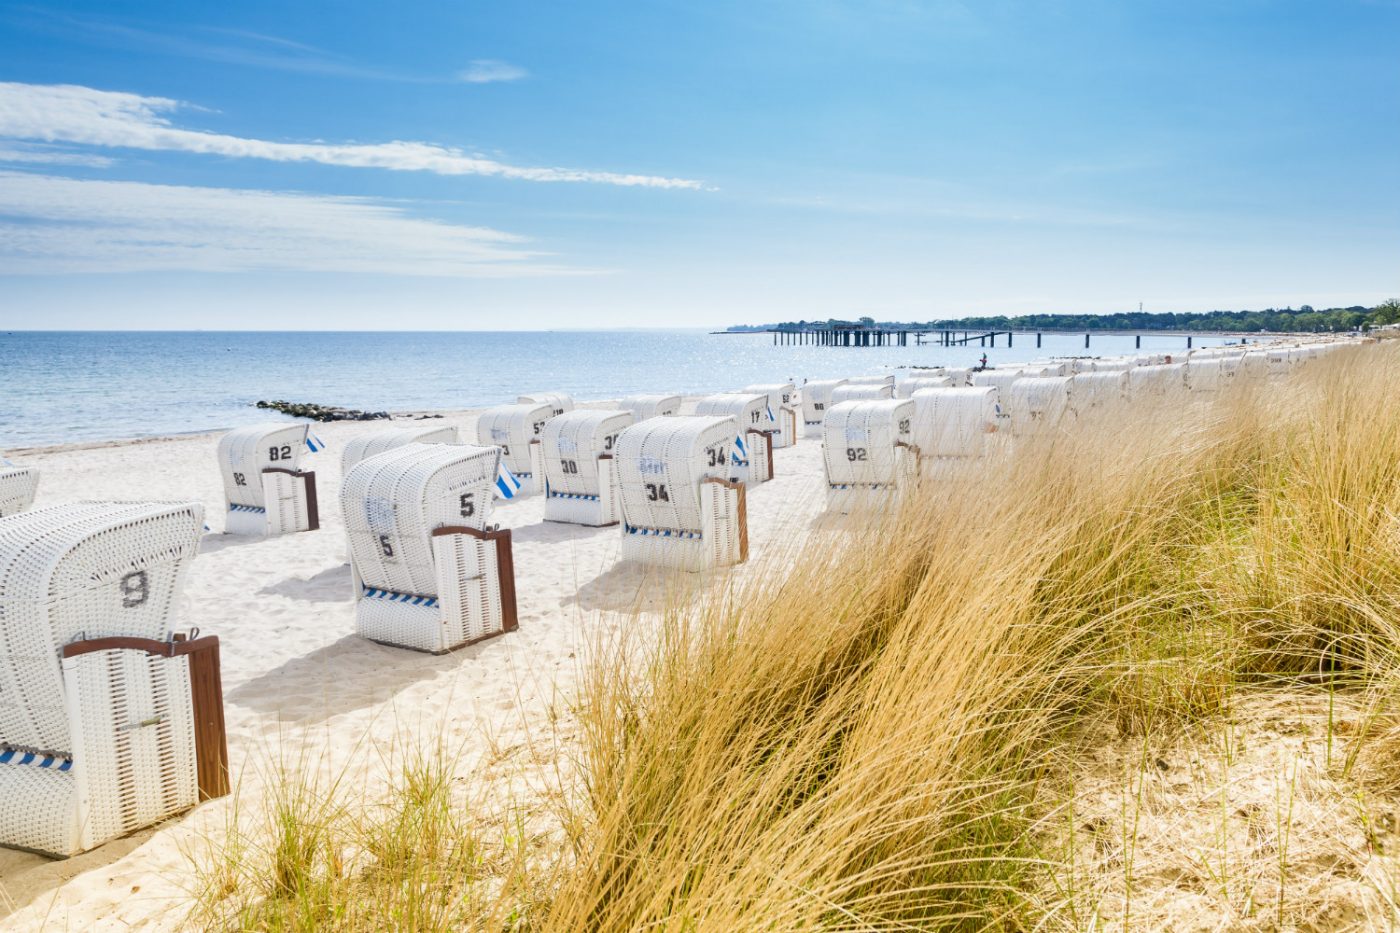 Strandkörbe auf einem Sandstrand an der Ostsee